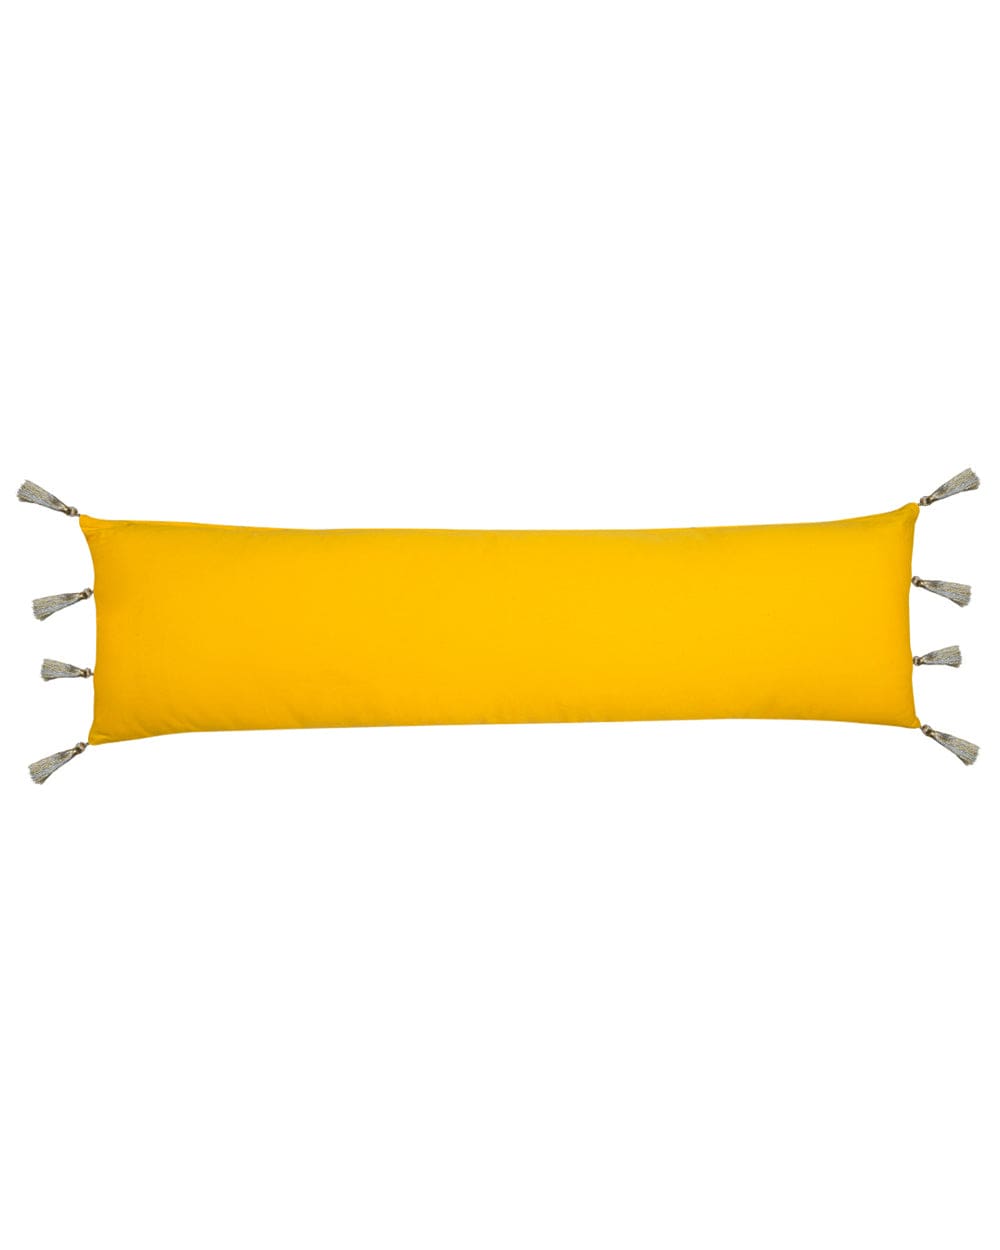 Chumbak Ornate Patchwork Lumbar Pillow Cover - Yellow